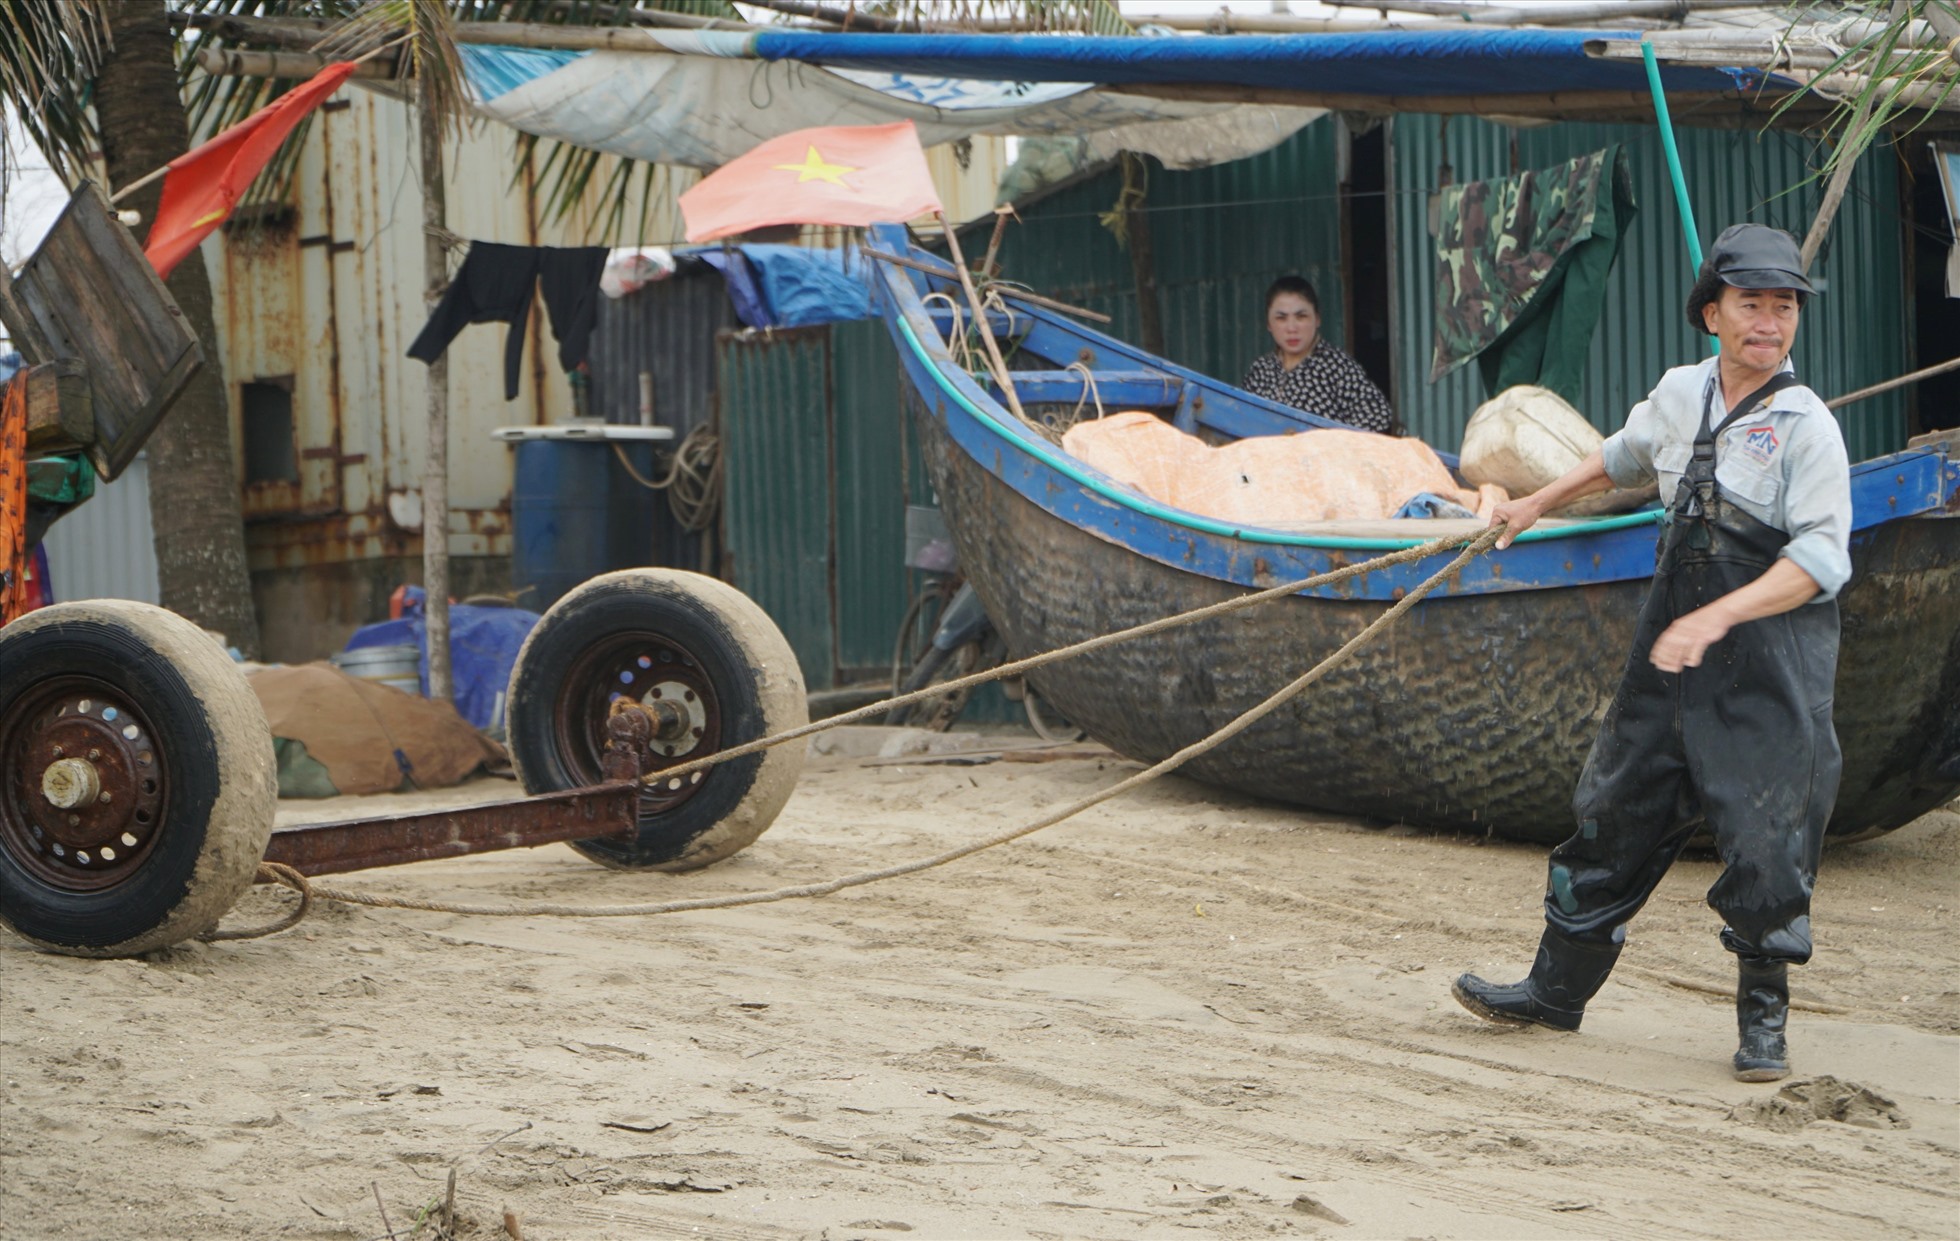 Ghi nhận của Lao Động trong những ngày đầu năm mới, tại các vùng biển của tỉnh Thanh Hóa ngư dân lại hối hả kéo thuyền, chuẩn bị ngư lưới cụ để ra khơi. Ảnh: Quách Du